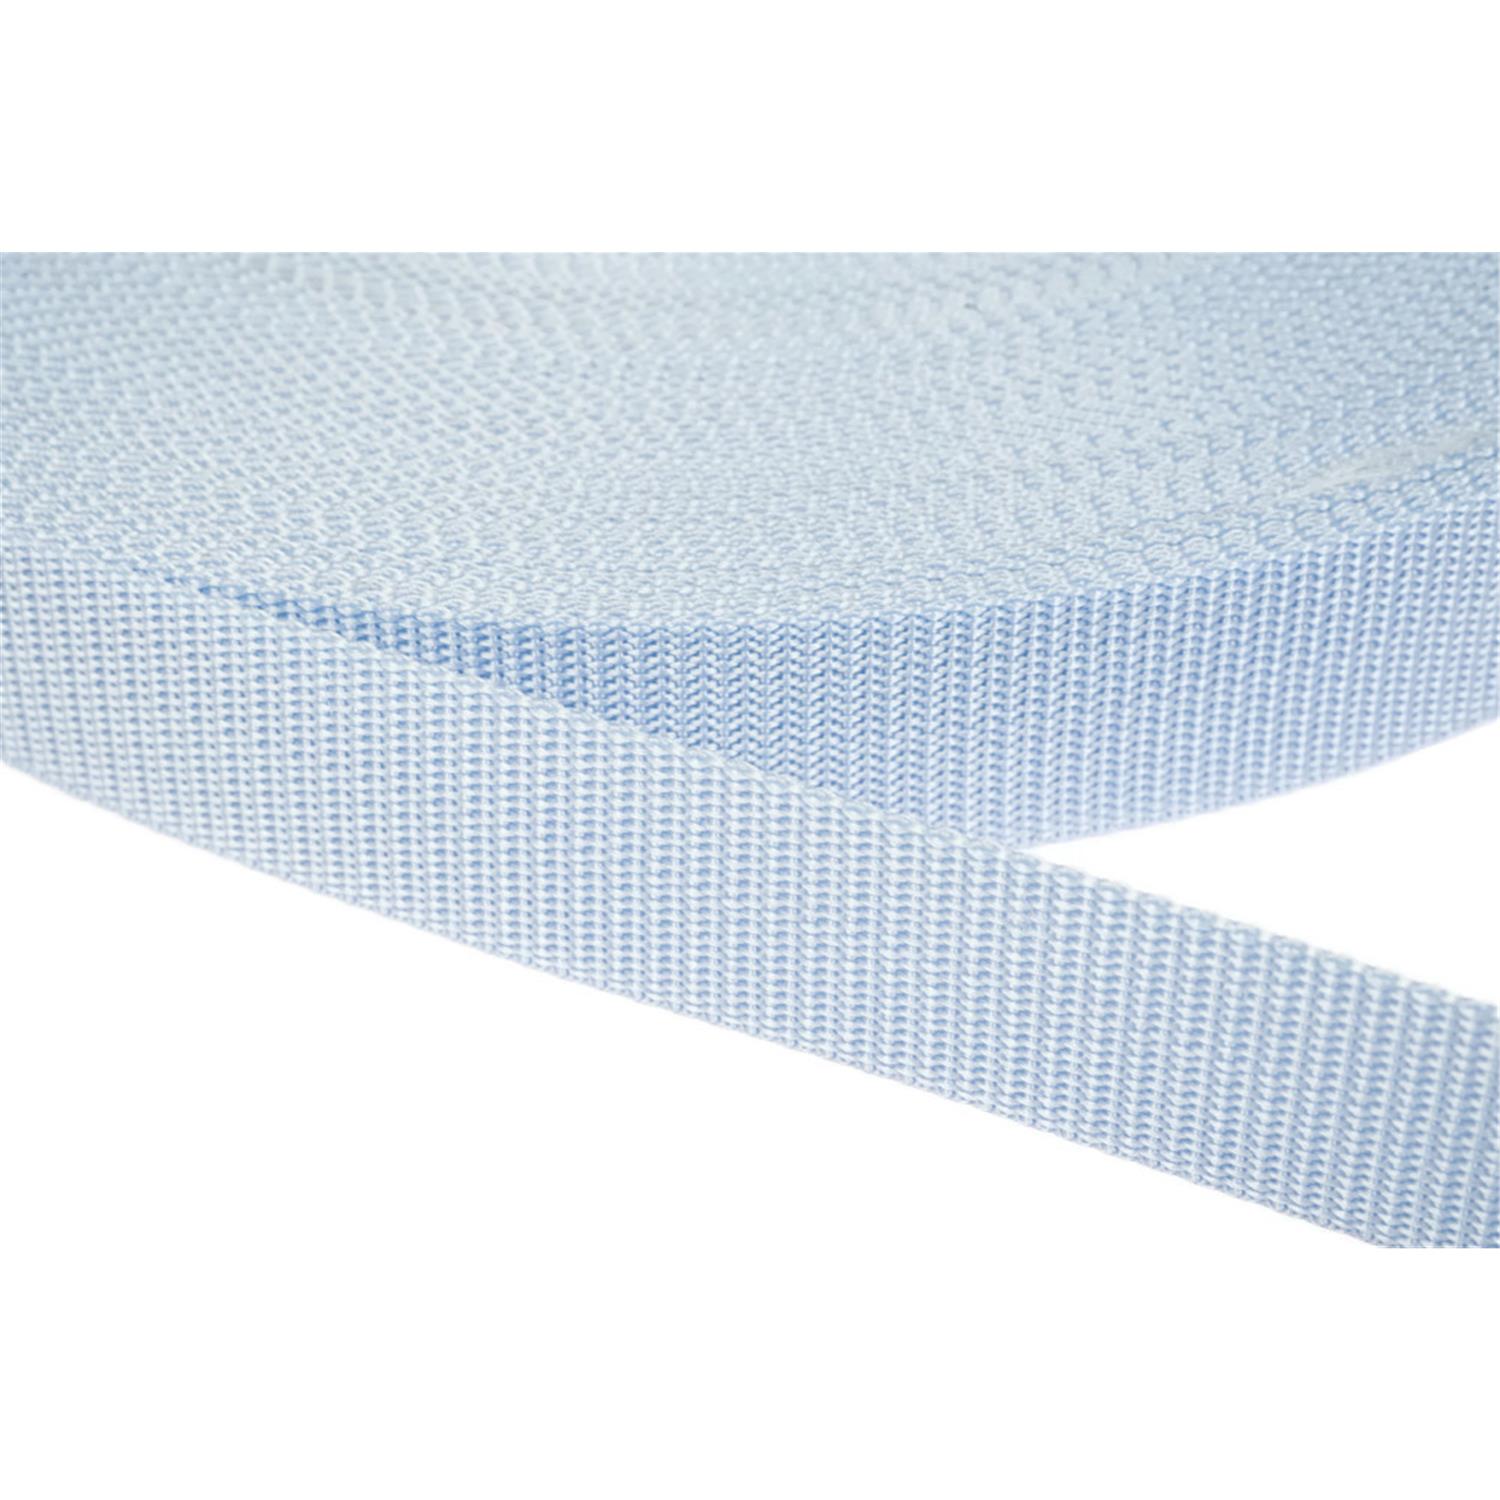 Gurtband 50mm breit aus Polypropylen in 41 Farben 25 - hellblau 6 Meter